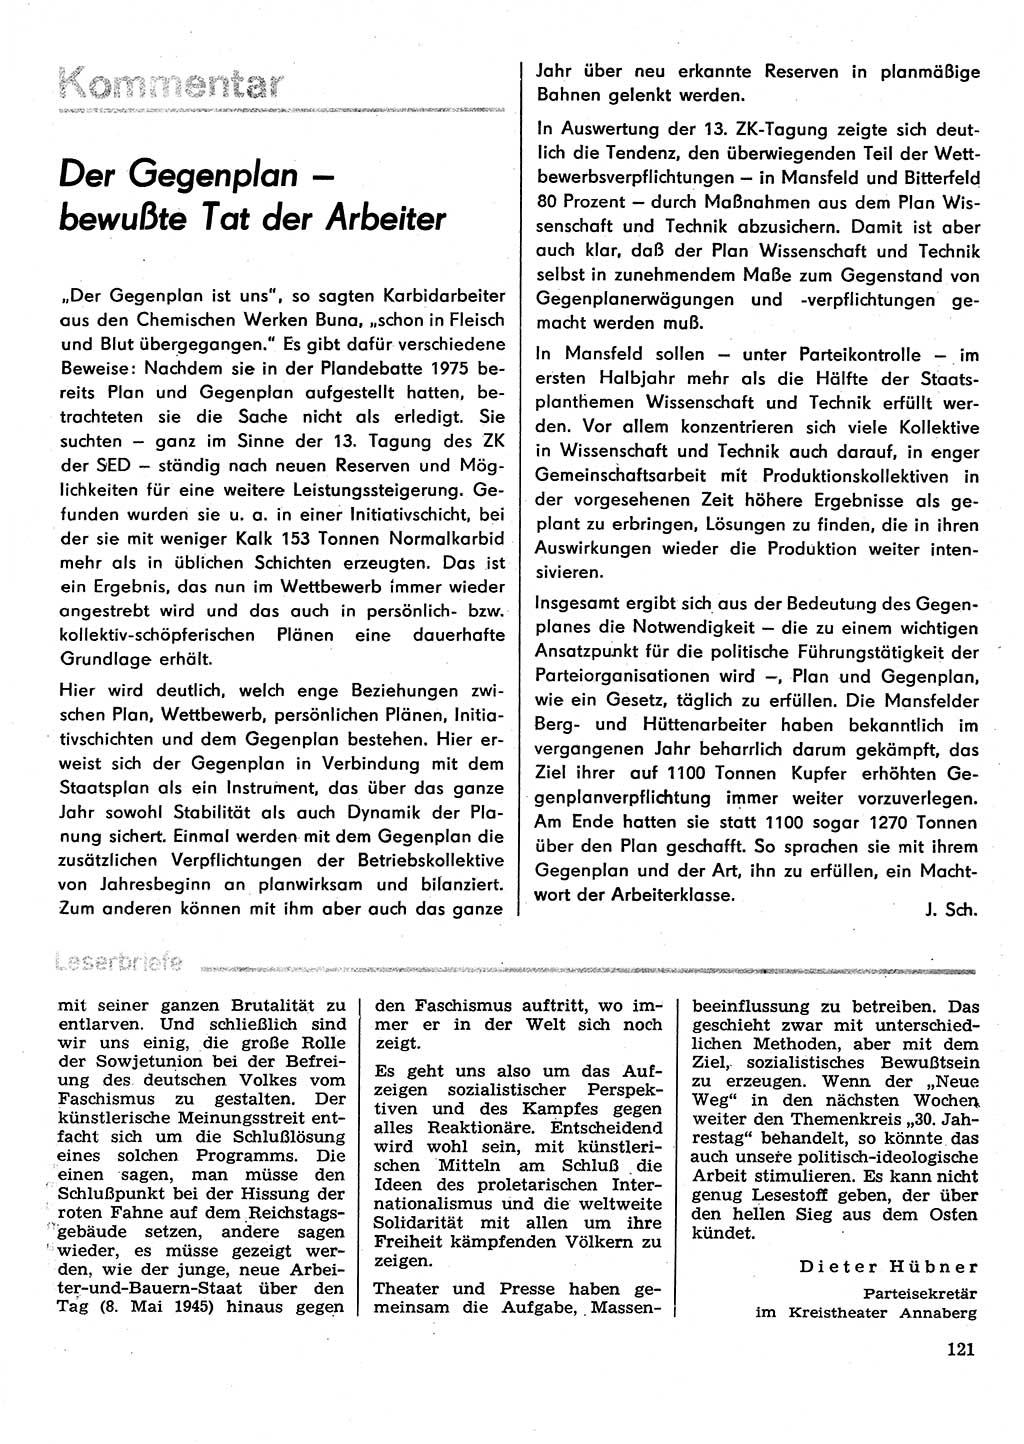 Neuer Weg (NW), Organ des Zentralkomitees (ZK) der SED (Sozialistische Einheitspartei Deutschlands) für Fragen des Parteilebens, 30. Jahrgang [Deutsche Demokratische Republik (DDR)] 1975, Seite 121 (NW ZK SED DDR 1975, S. 121)